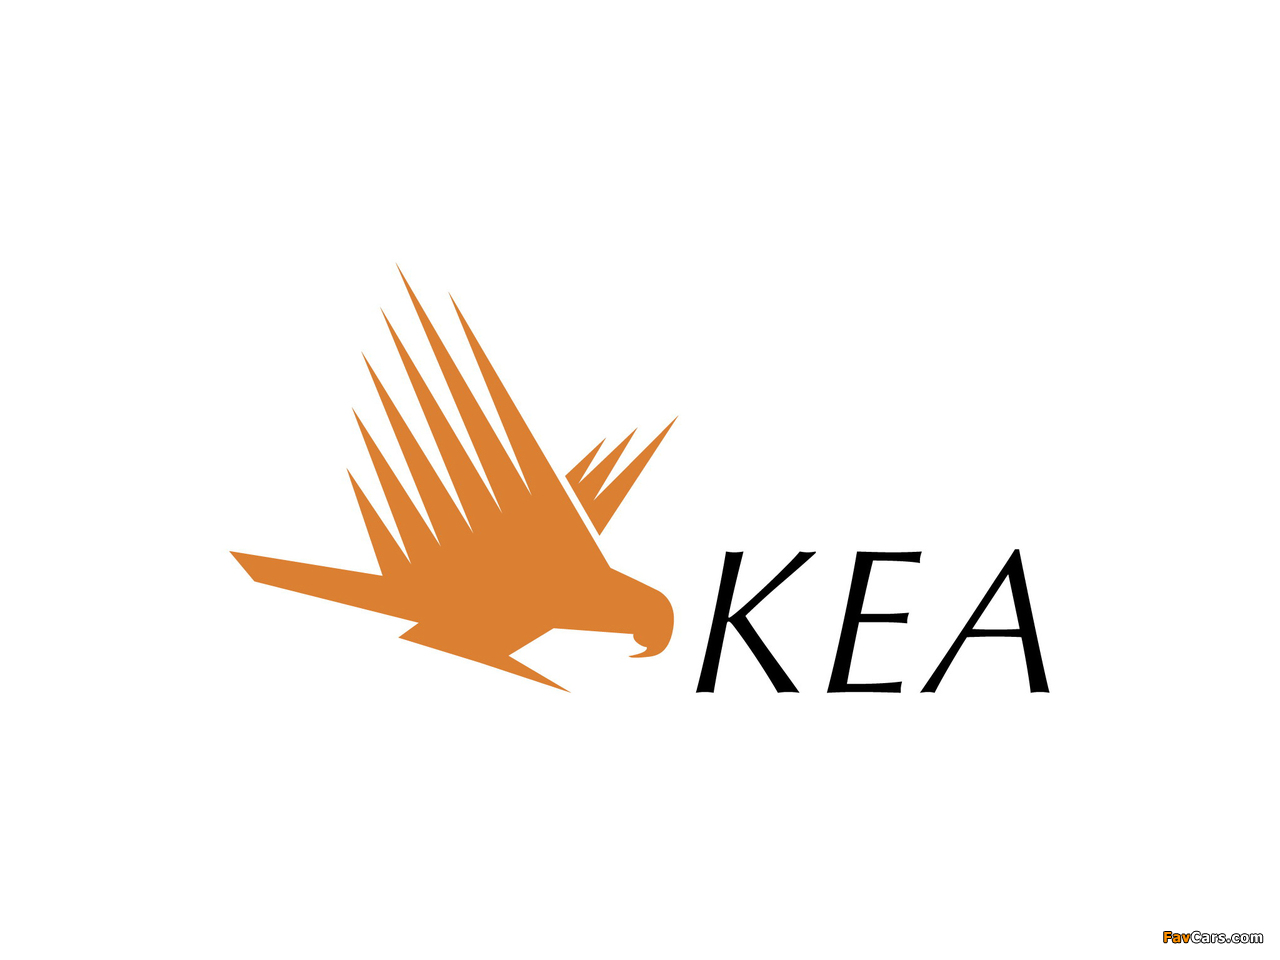 KEA images (1280 x 960)